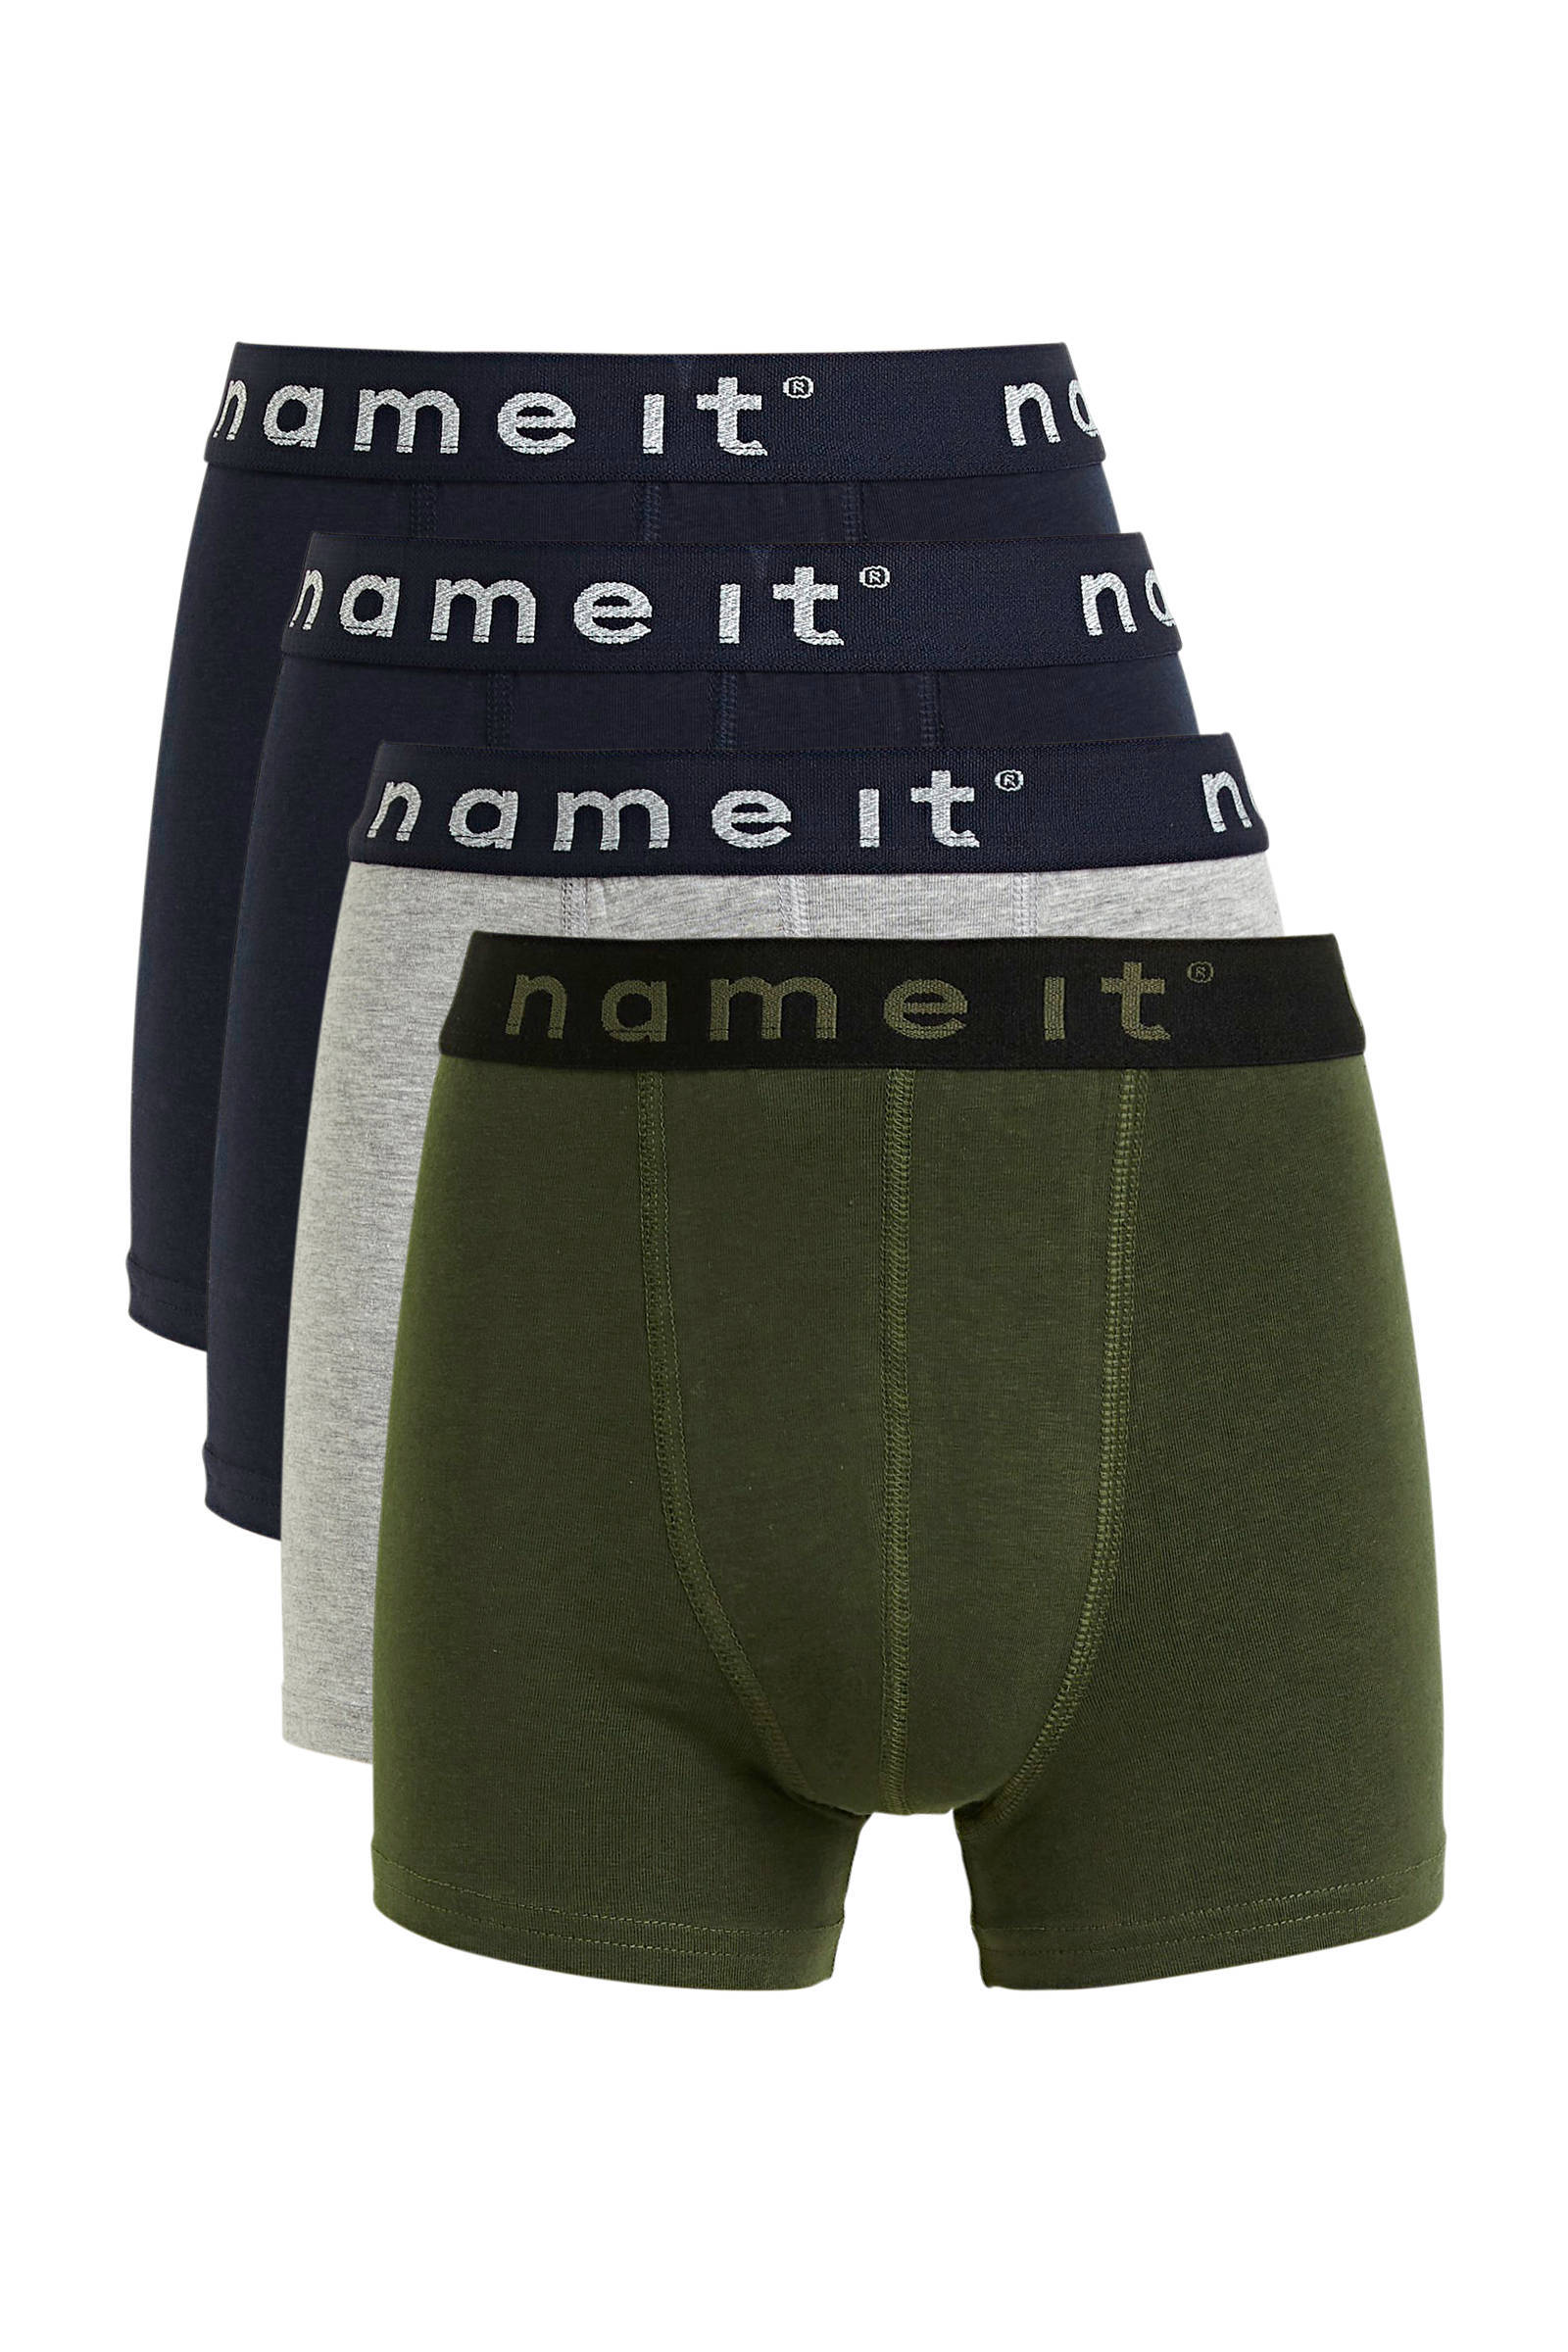 NAME IT KIDS boxershort set van 3 donkerblauw/grijs melange/donkergroen online kopen